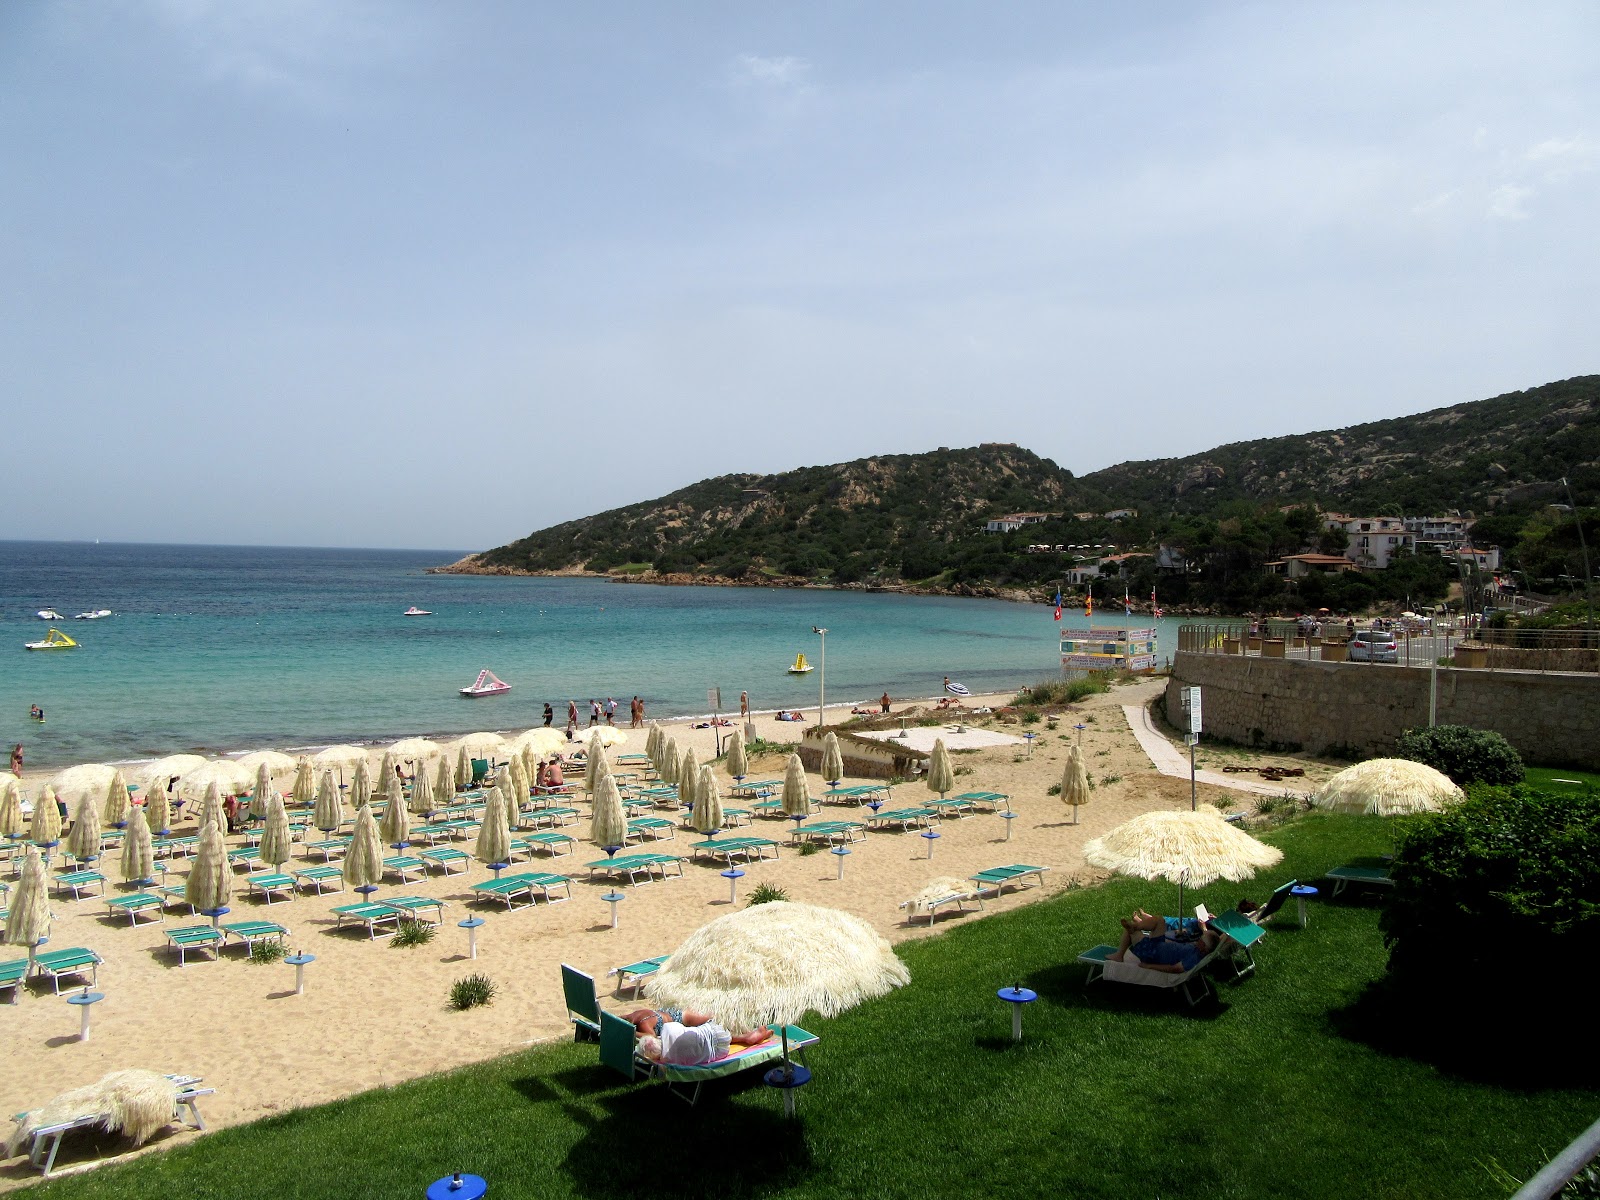 Photo of Cala Battistoni Beach and its beautiful scenery